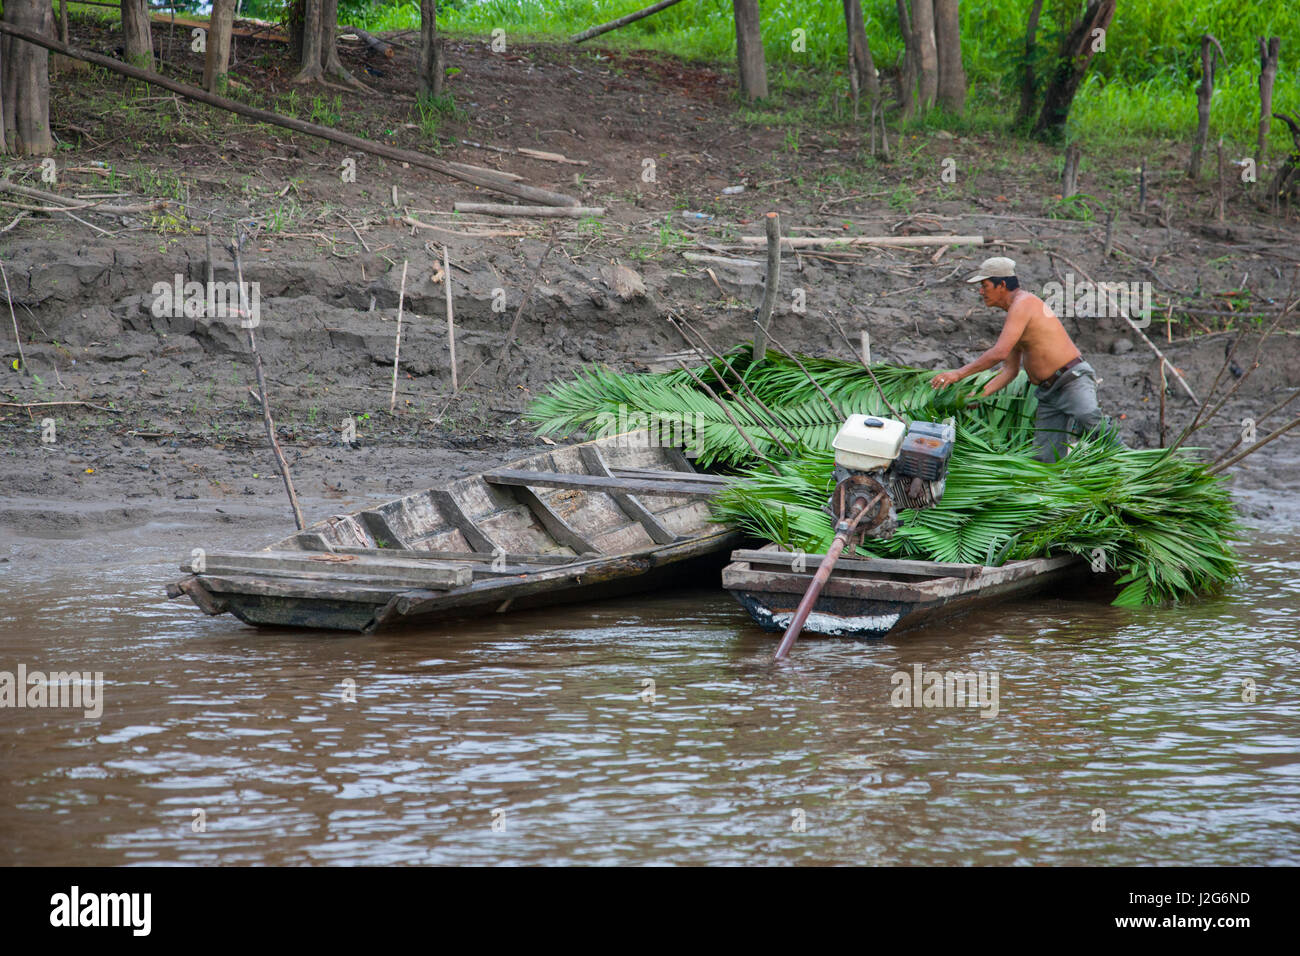 Un homme amazonien local récolte puy de feuilles de palmier qui seront séchés et utilisés comme matériaux de couverture dans sa longue maison. Banque D'Images